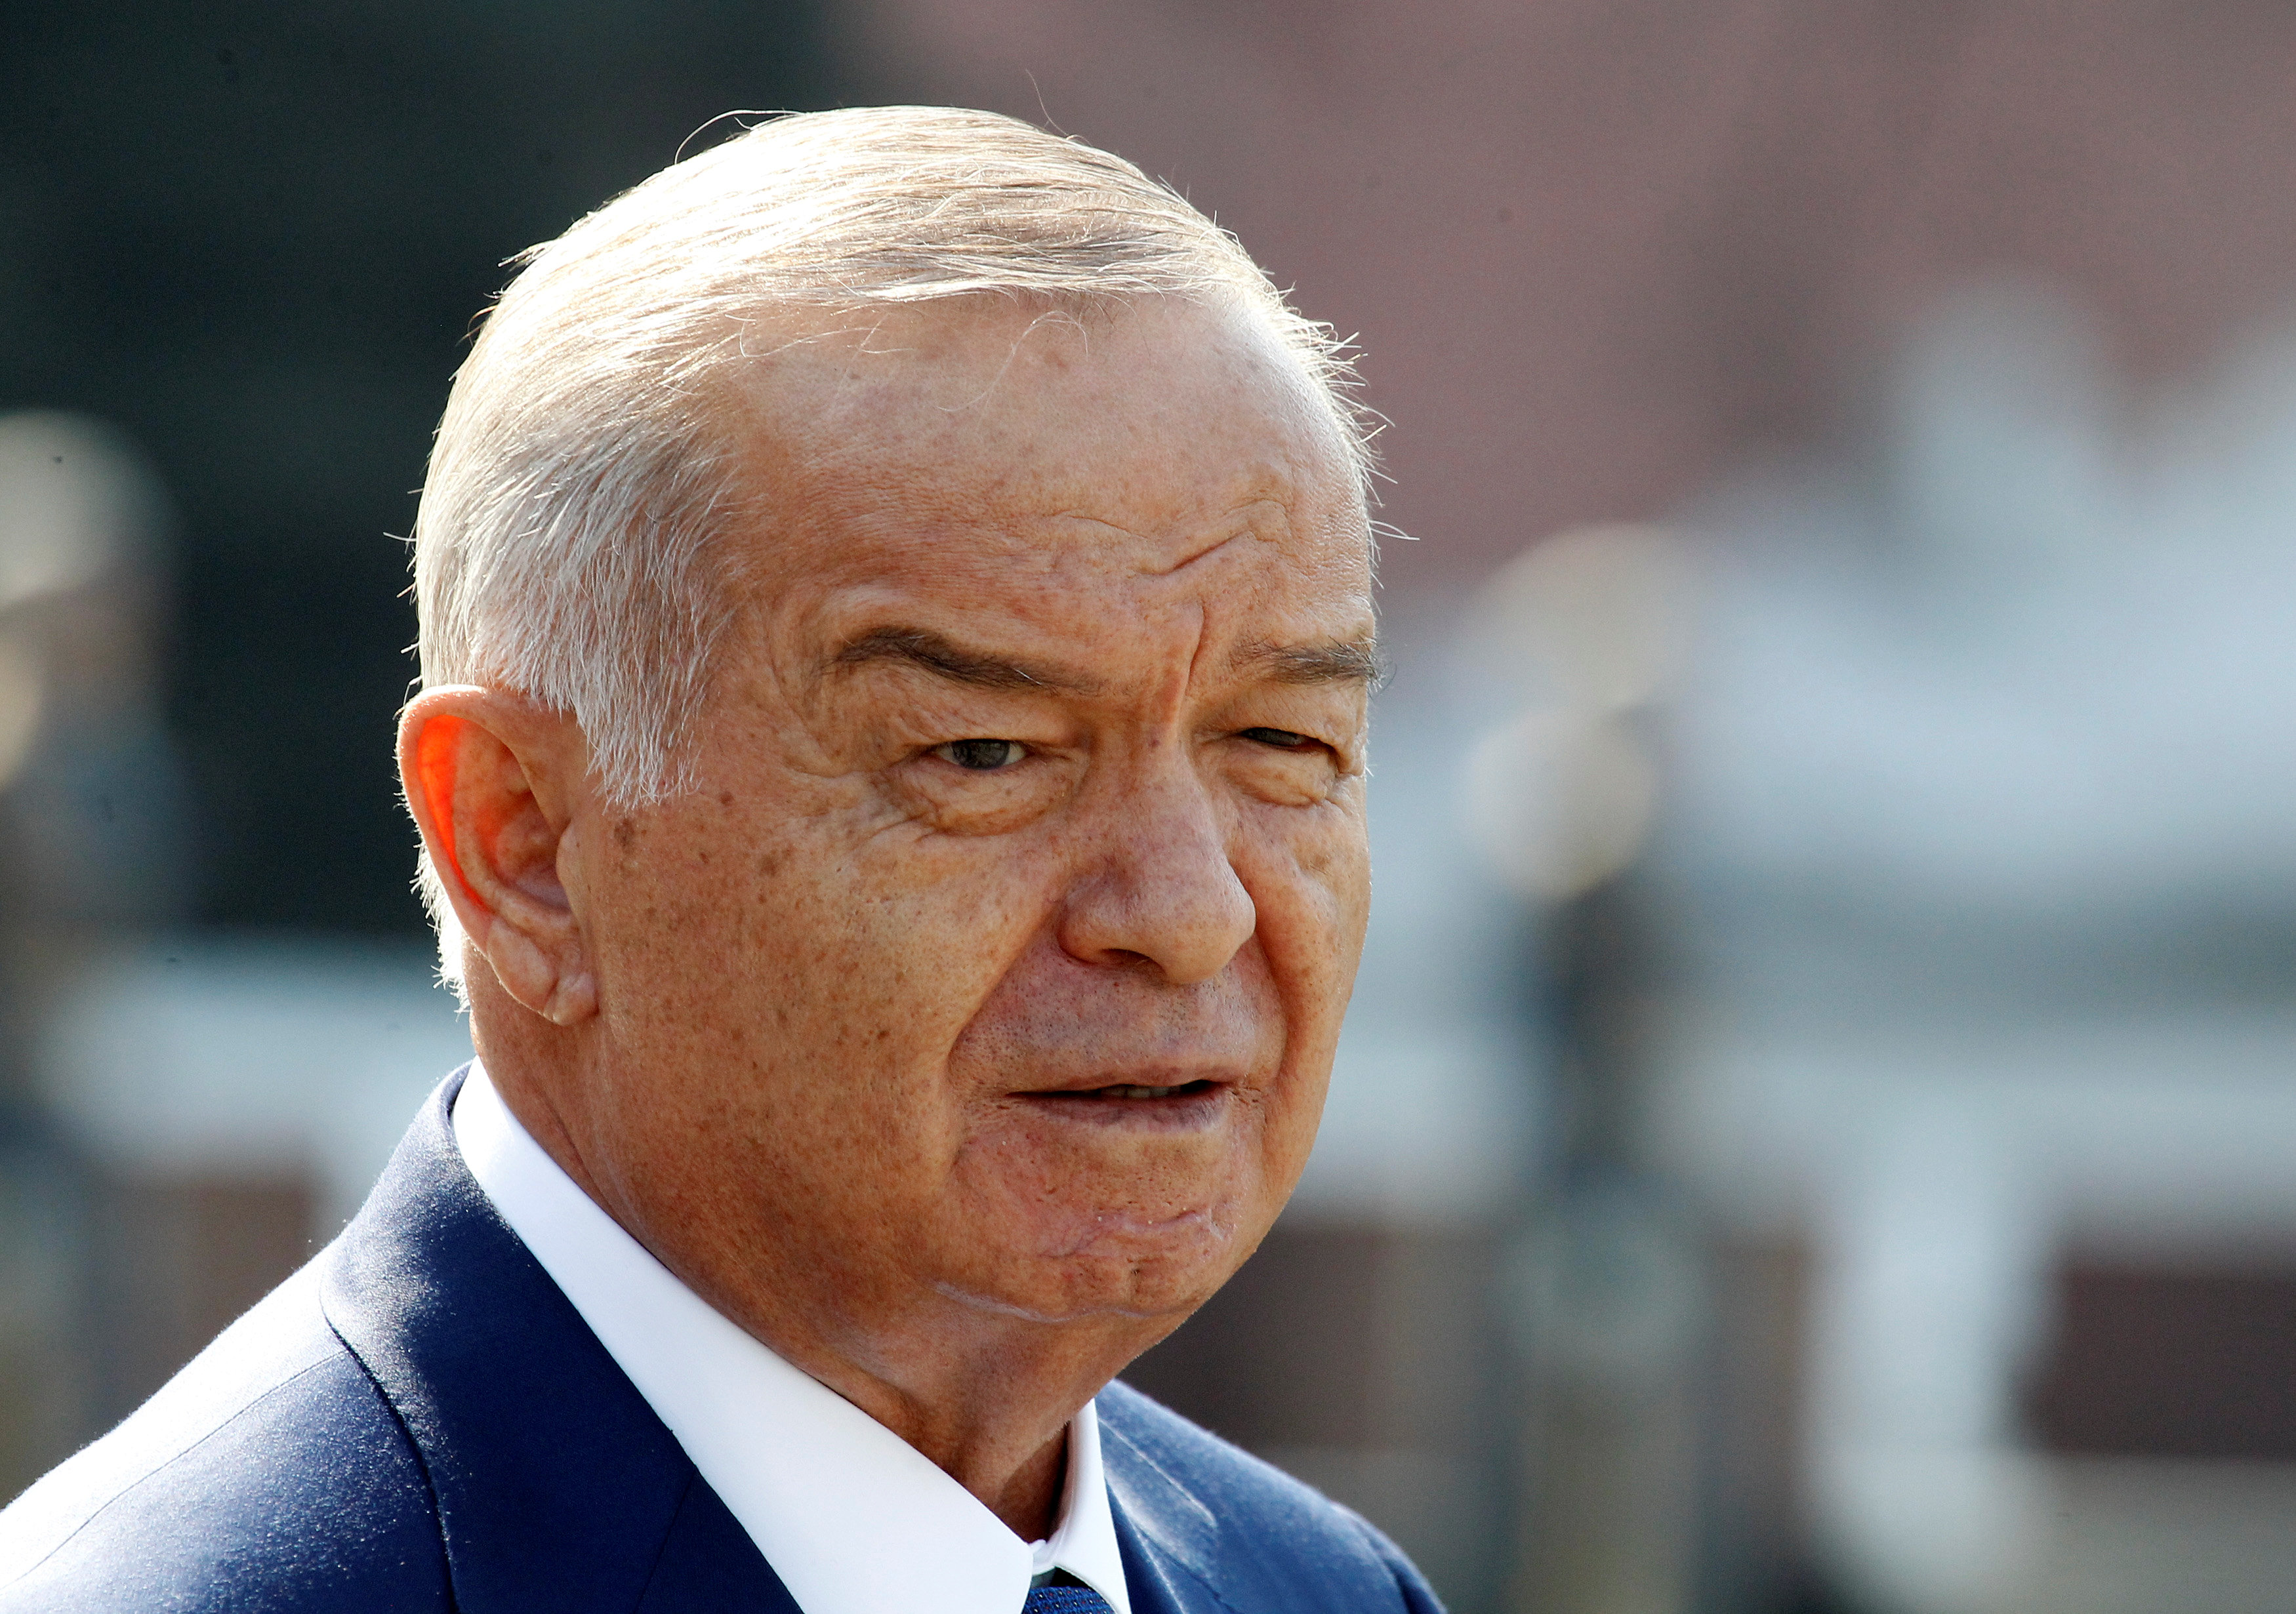 Foto de archivo del presidente de Uzbekistán, Islam Karimov. REUTERS